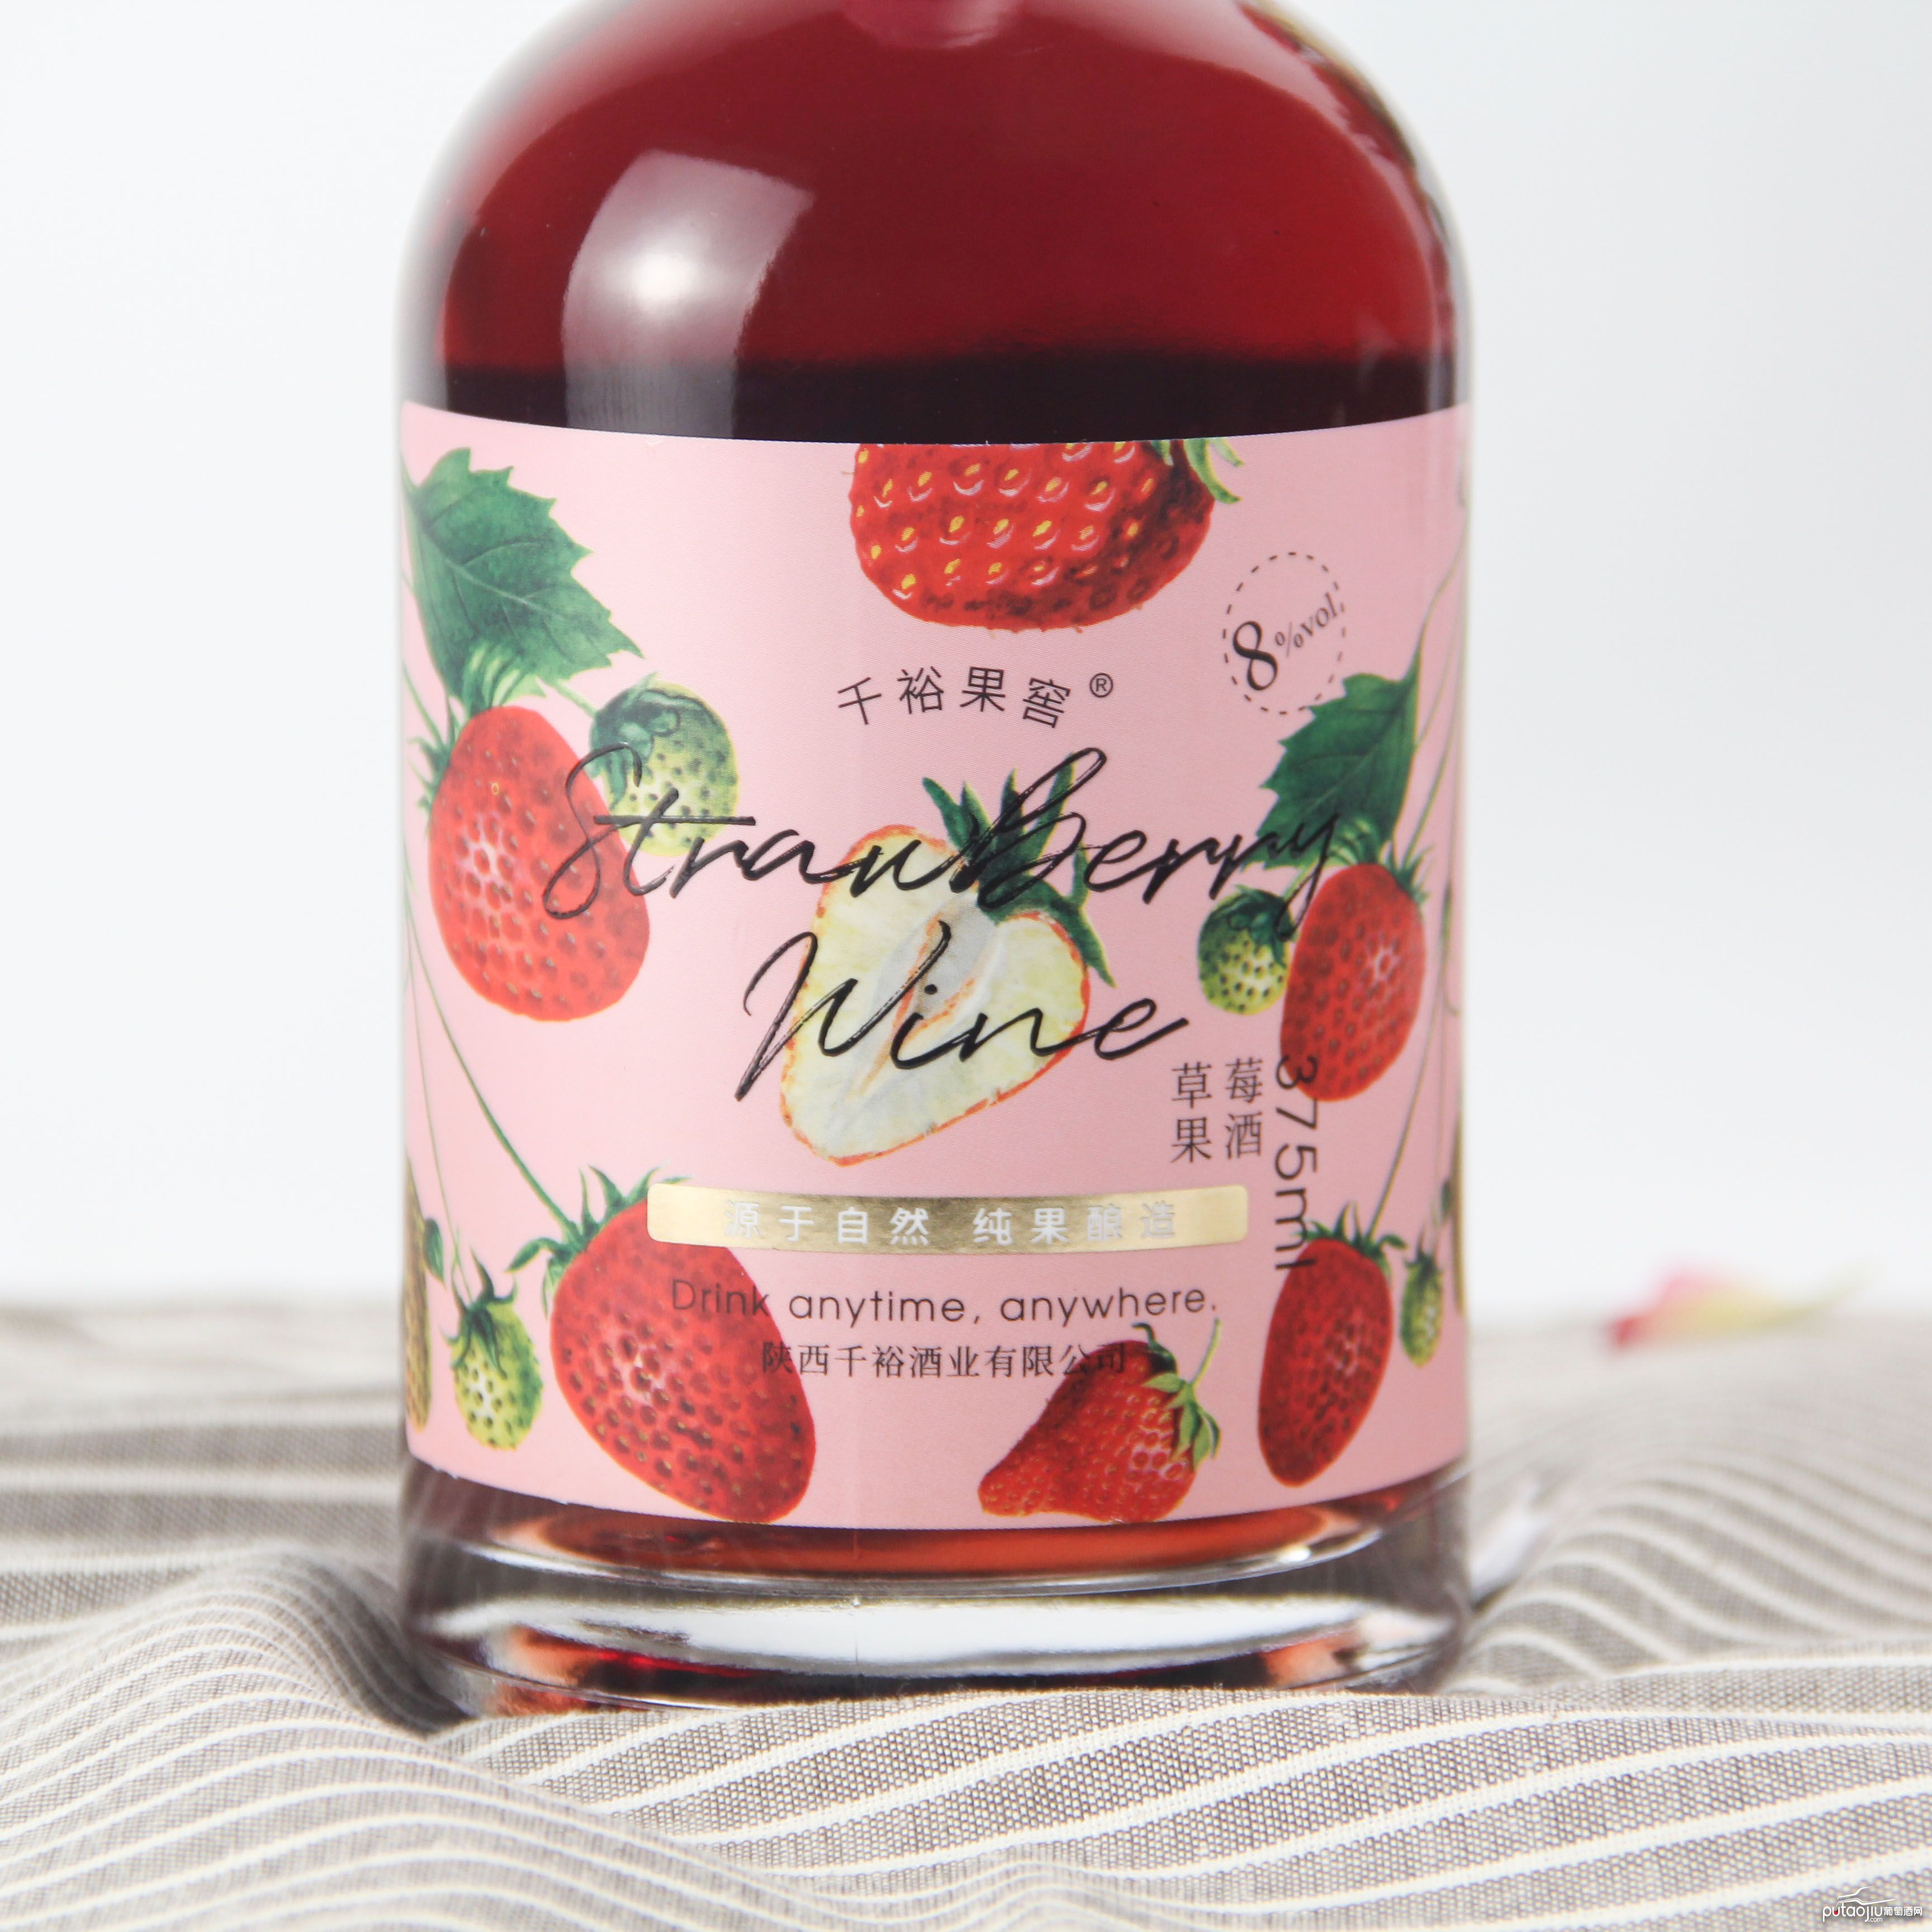 中国陕西产区千裕果窖草莓果酒